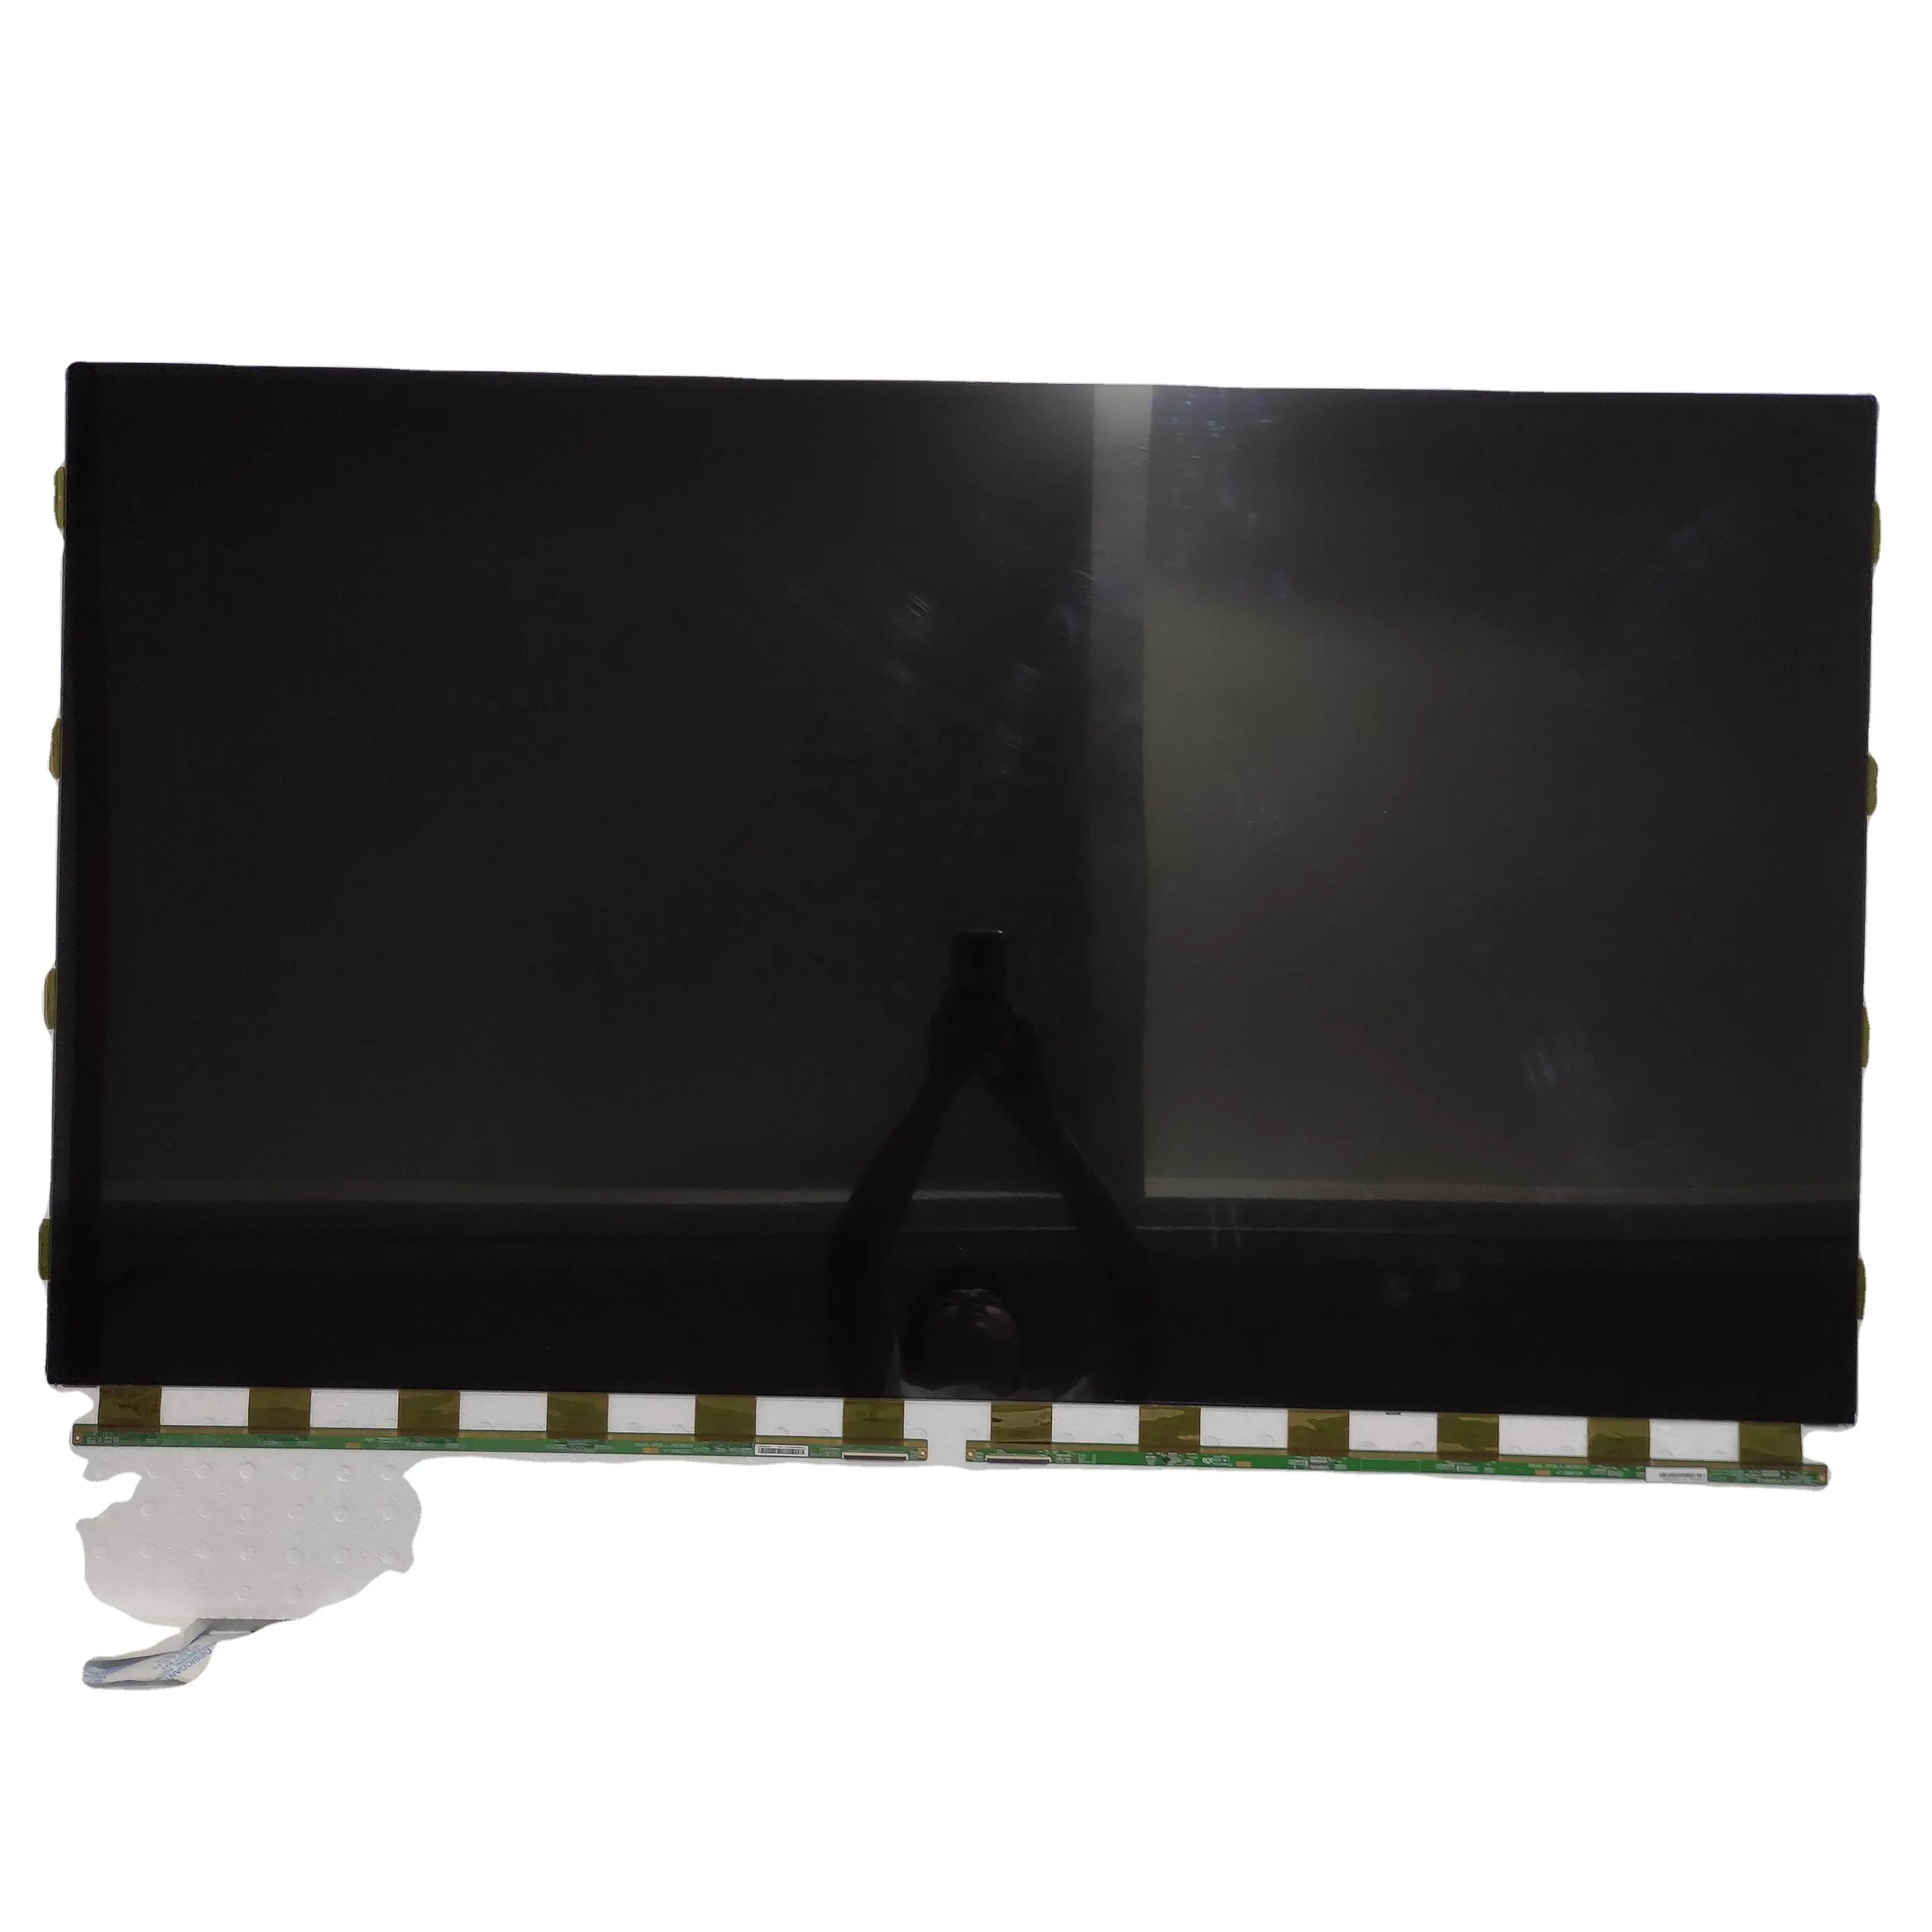 الجملة تلفاز LCD لوحة لبنك تلفزيون LCD HV550QUB-N81 55 بوصة تلفزيون lcd استبدال